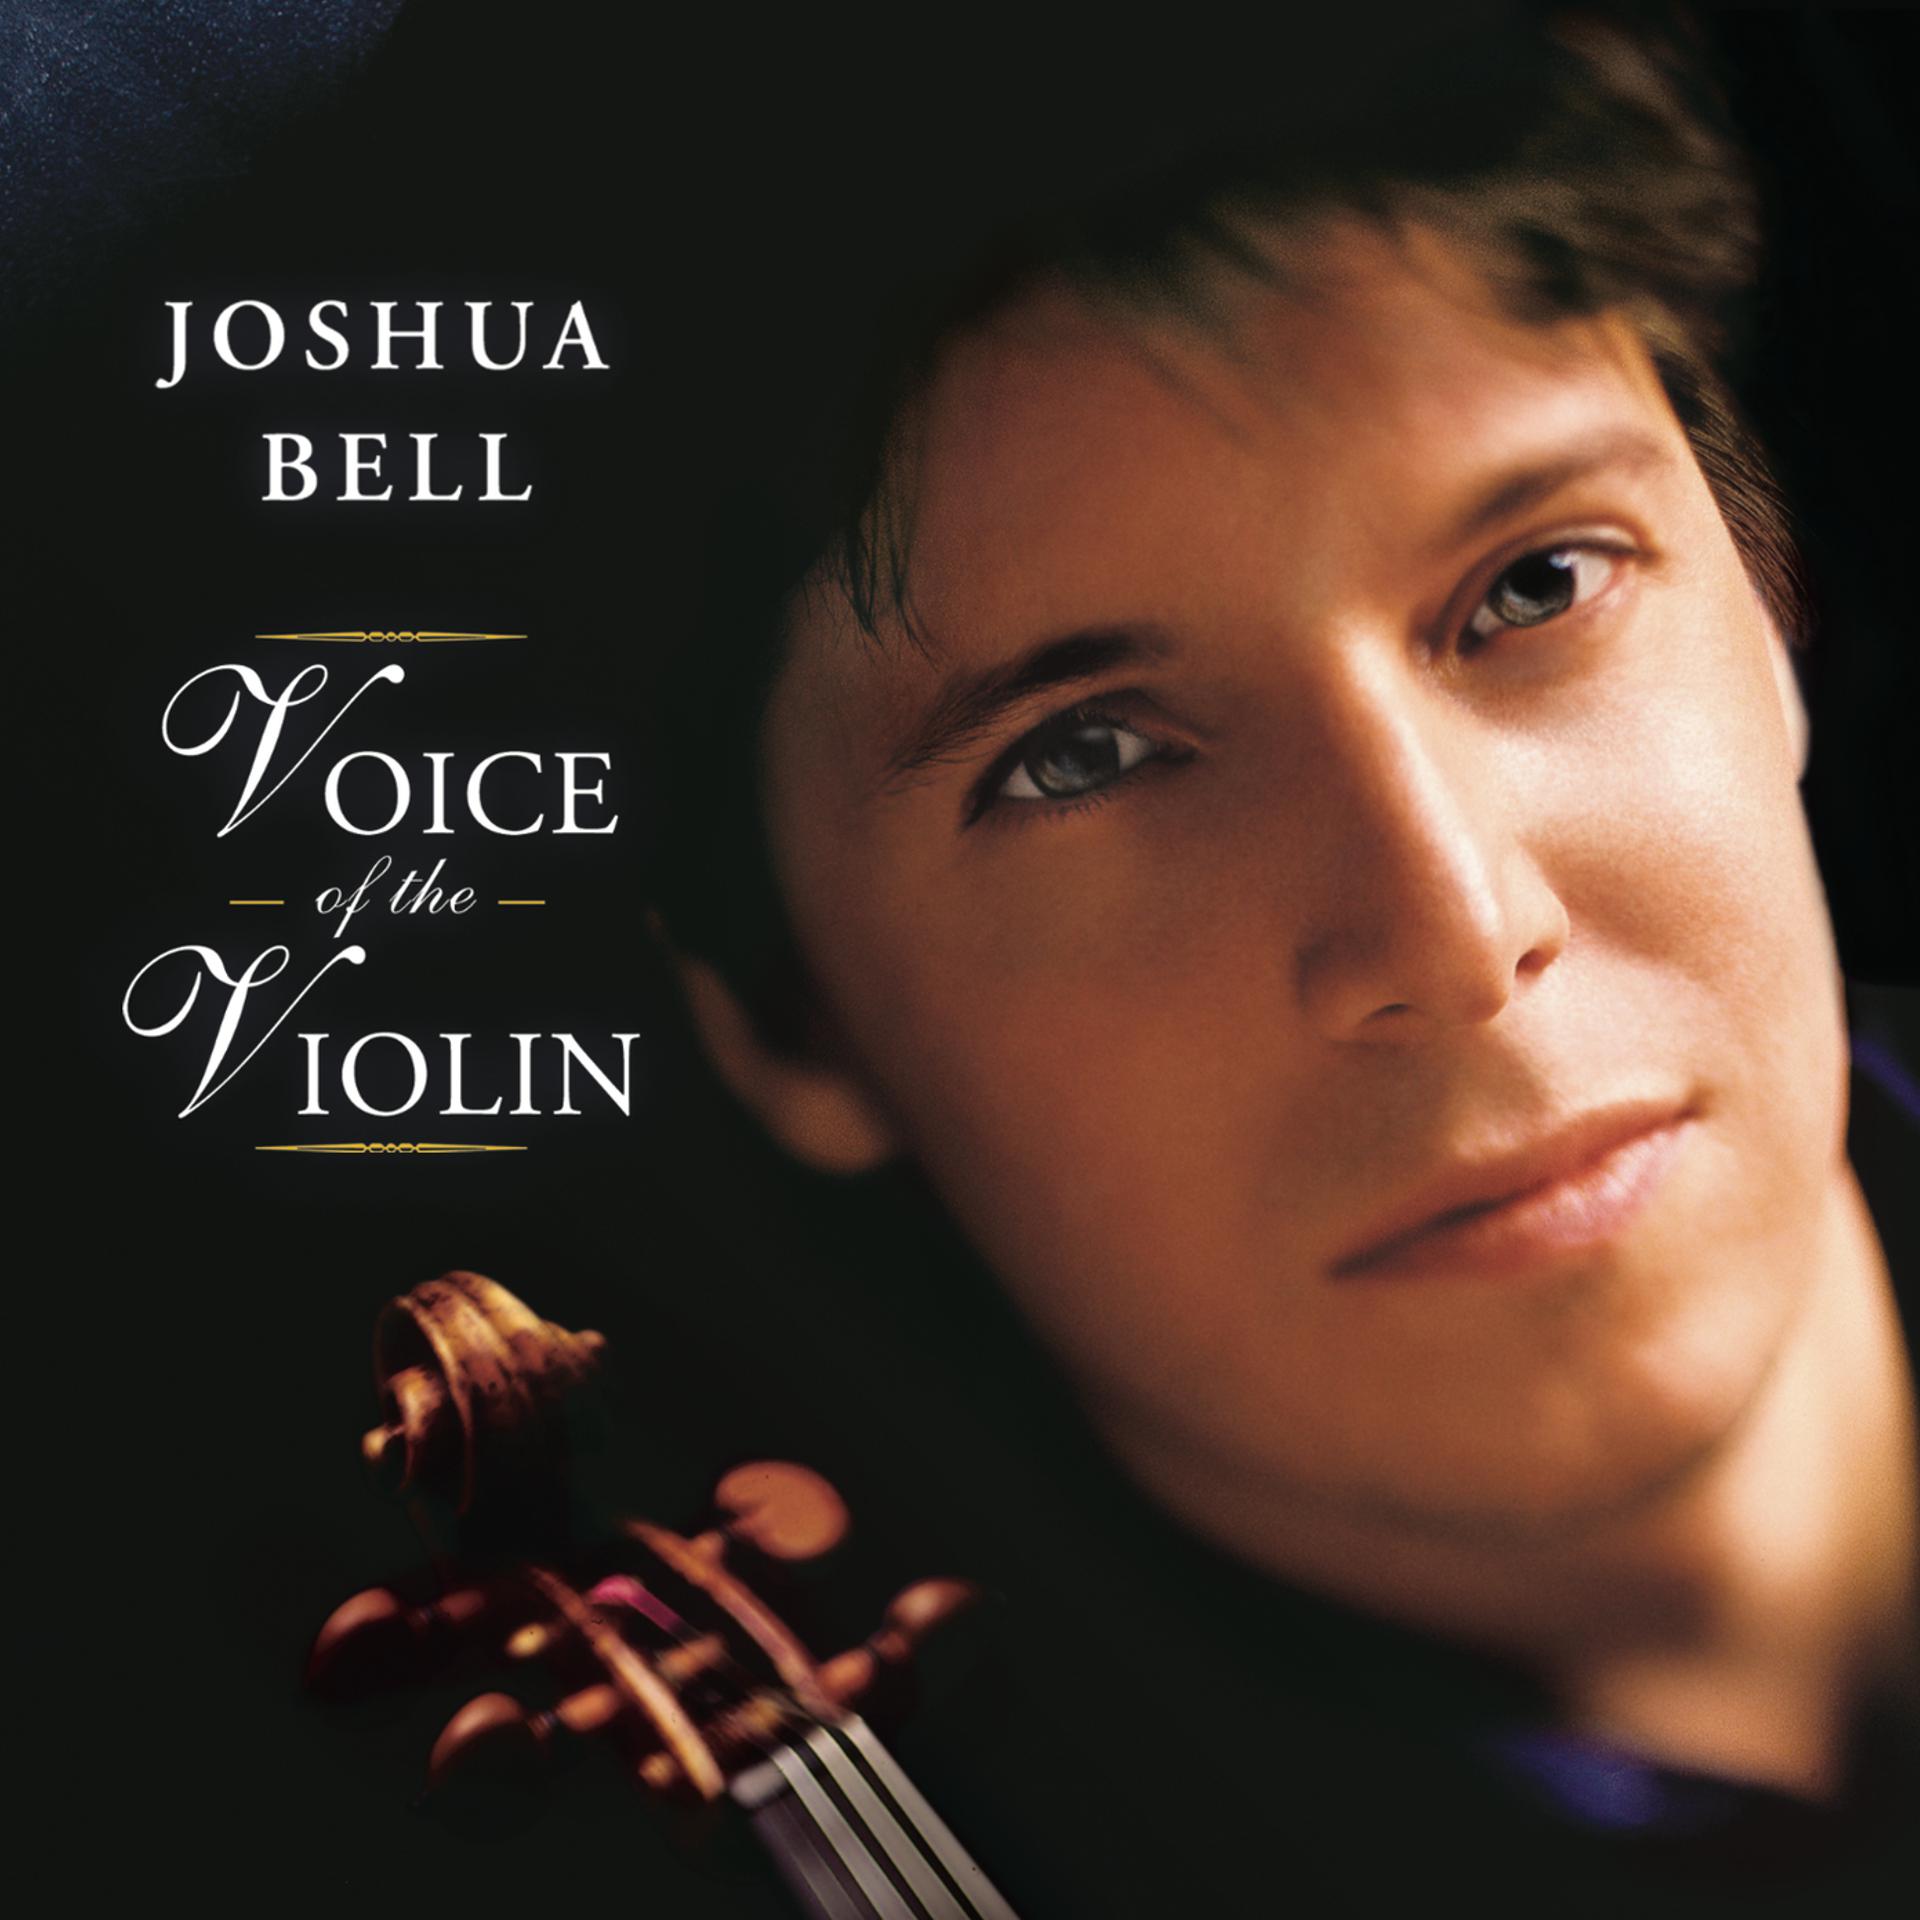 Joshua violin. Joshua Bell. Joshua Bell Violin. Джошуа Белл слушать. Джошуа Белл слушать музыку.